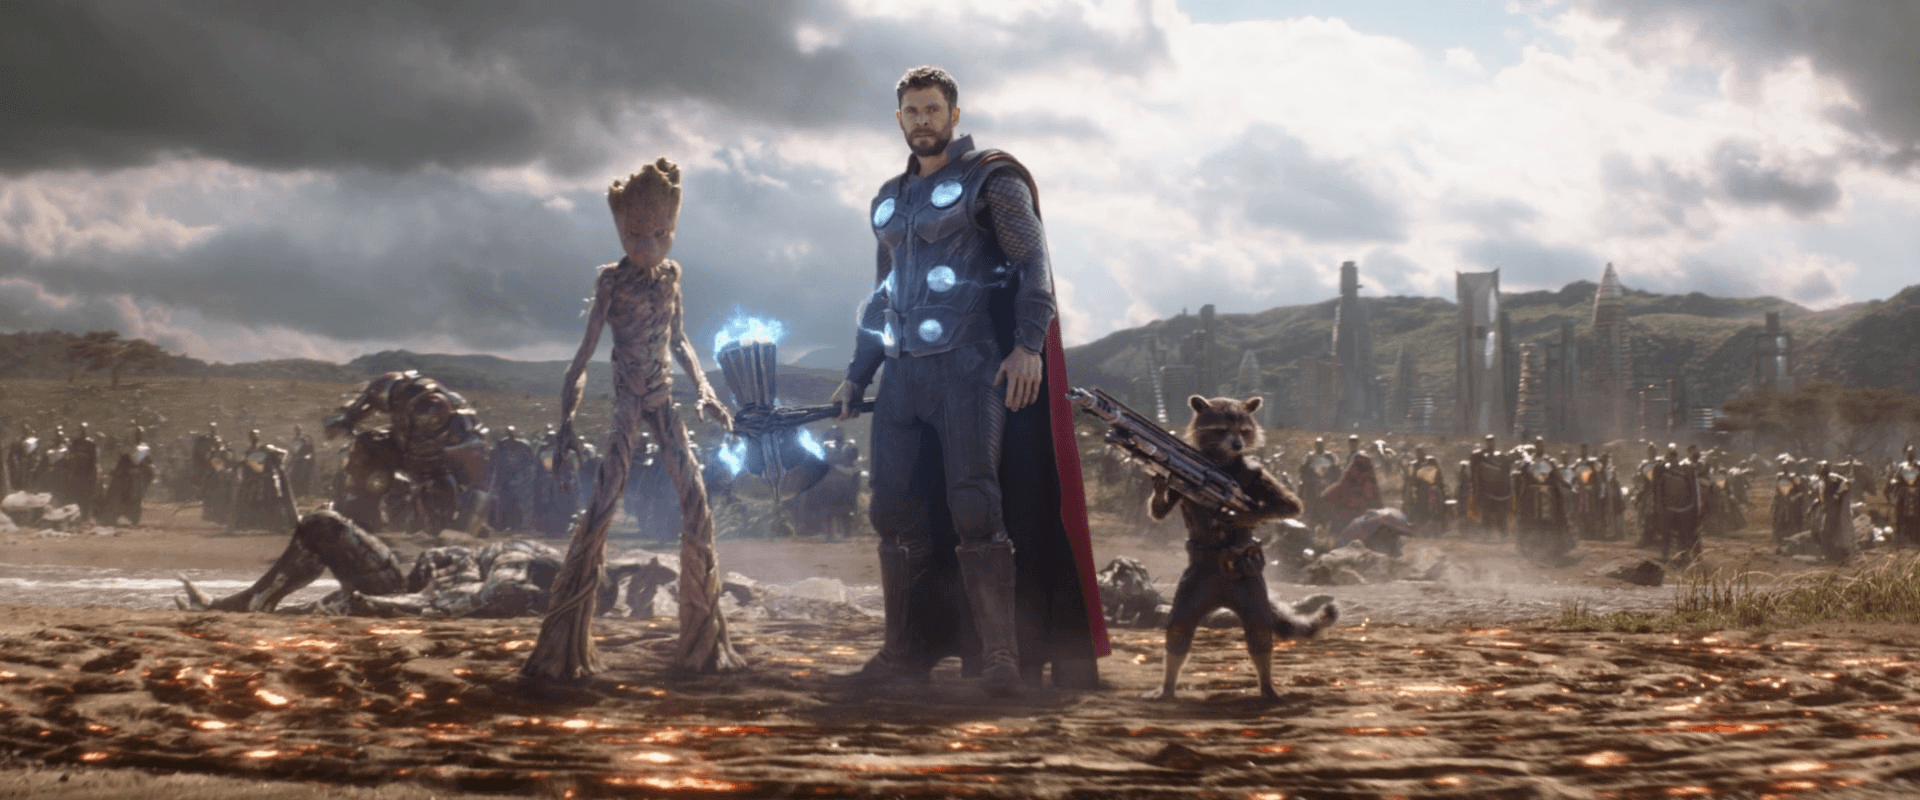 Thor's landing in Wakanda. Avengers: Infinity War